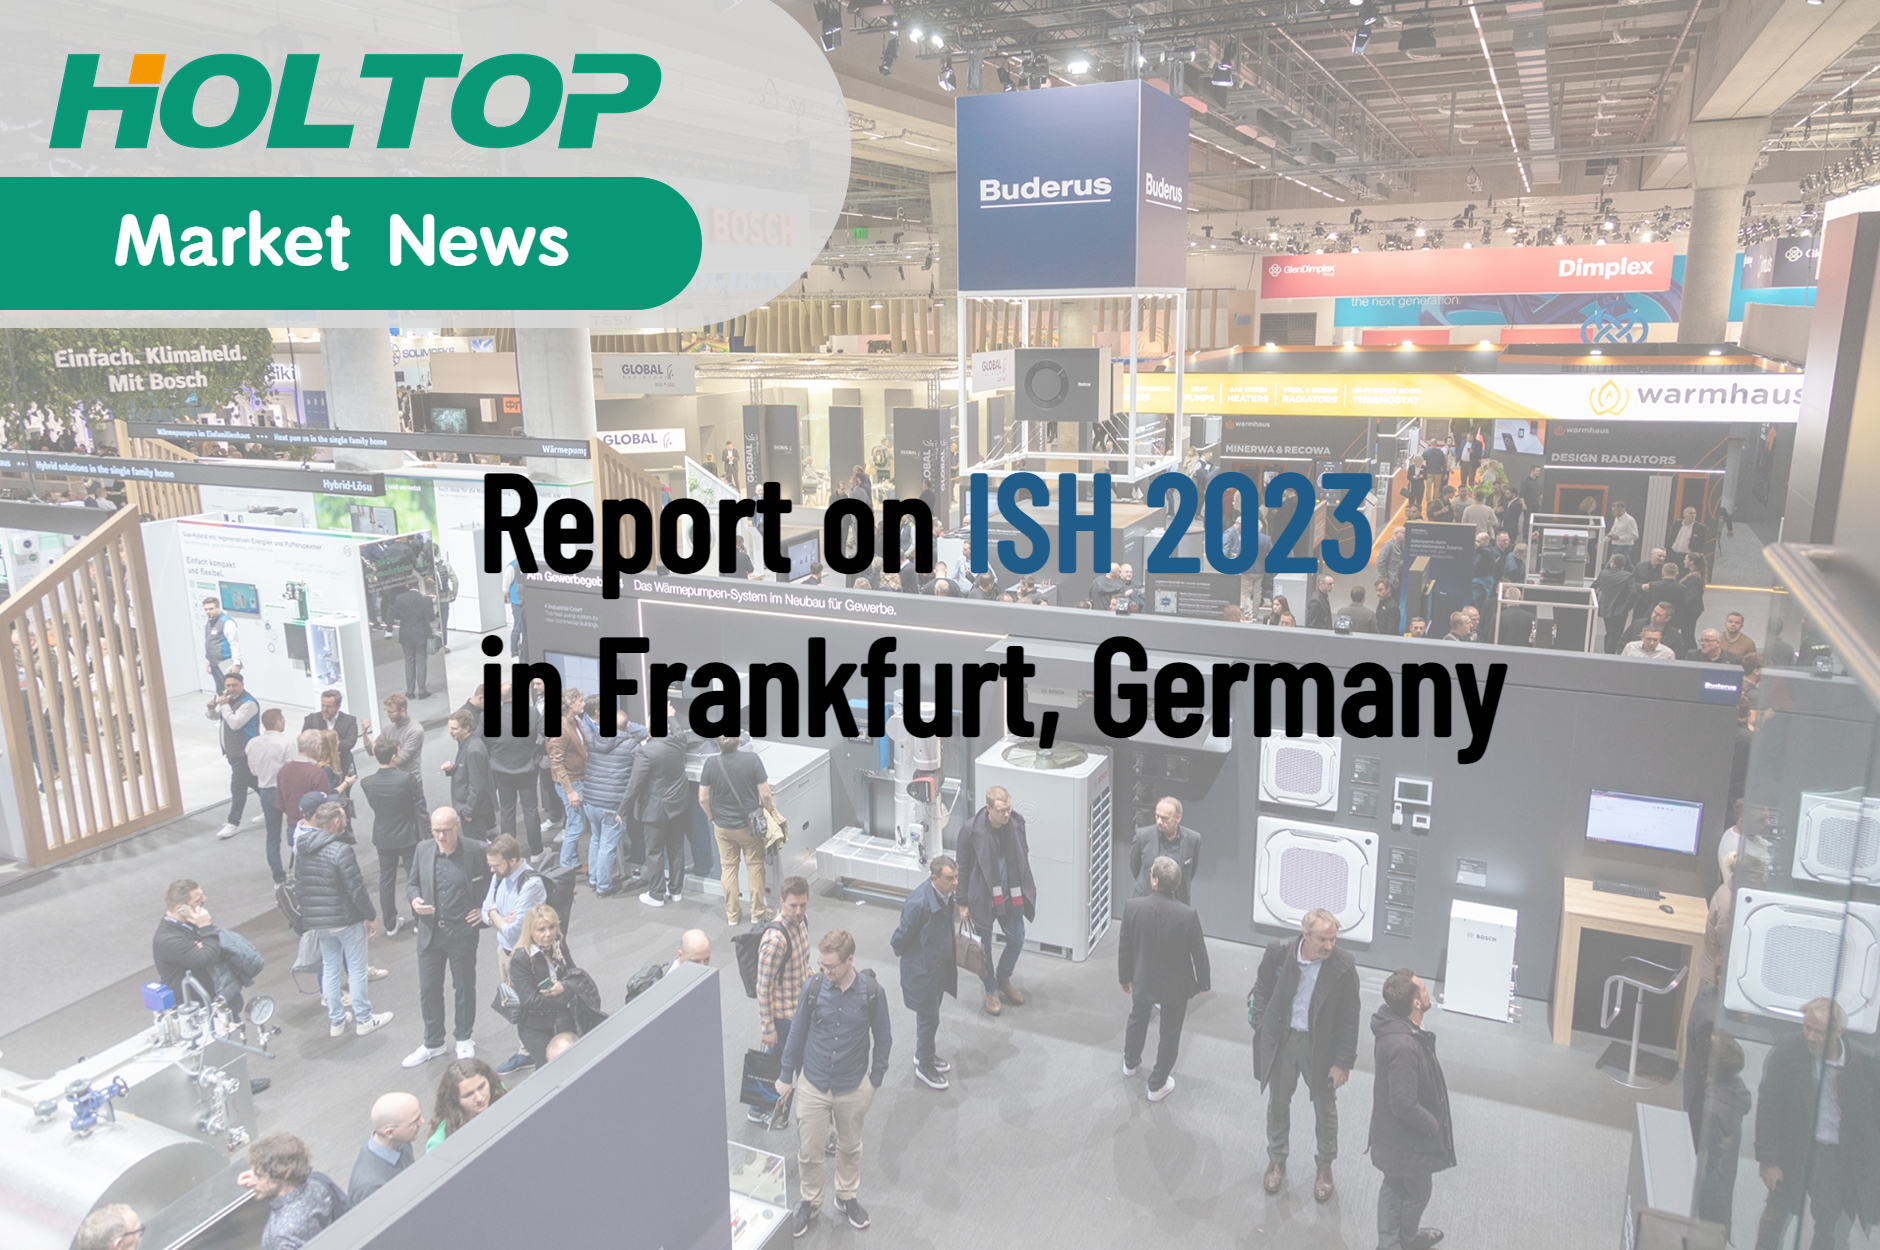 Une révolution dans l'industrie européenne du chauffage - Rapport sur ISH 2023 à Francfort, Allemagne